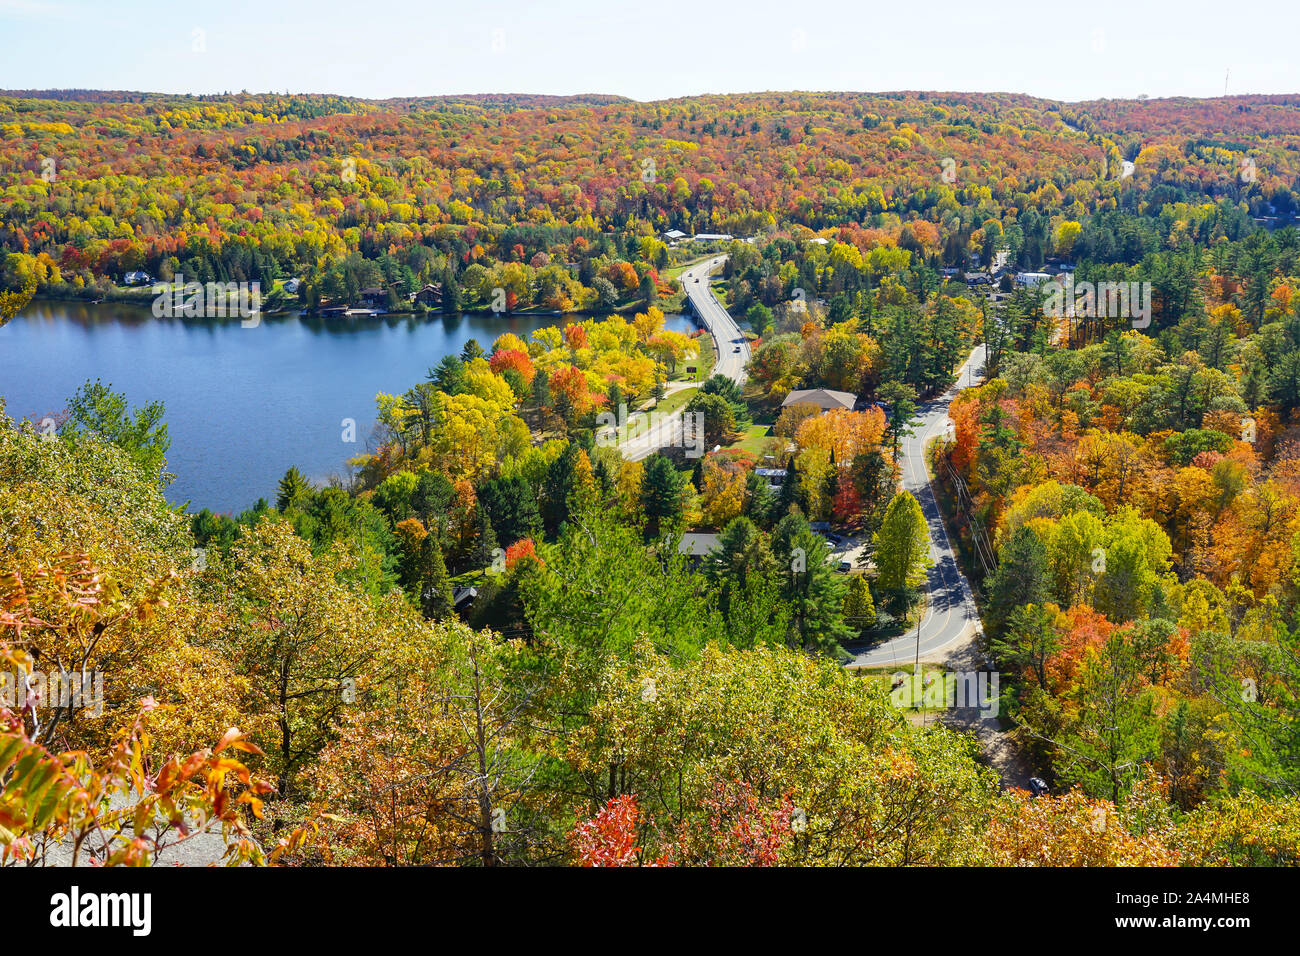 Die Stadt von Dorset in Ontario, Kanada, im Herbst oder im Herbst Jahreszeit mit bunten Ansichten und viele Touristen, die in der Fire Tower und Look-out-Hügel. Stockfoto